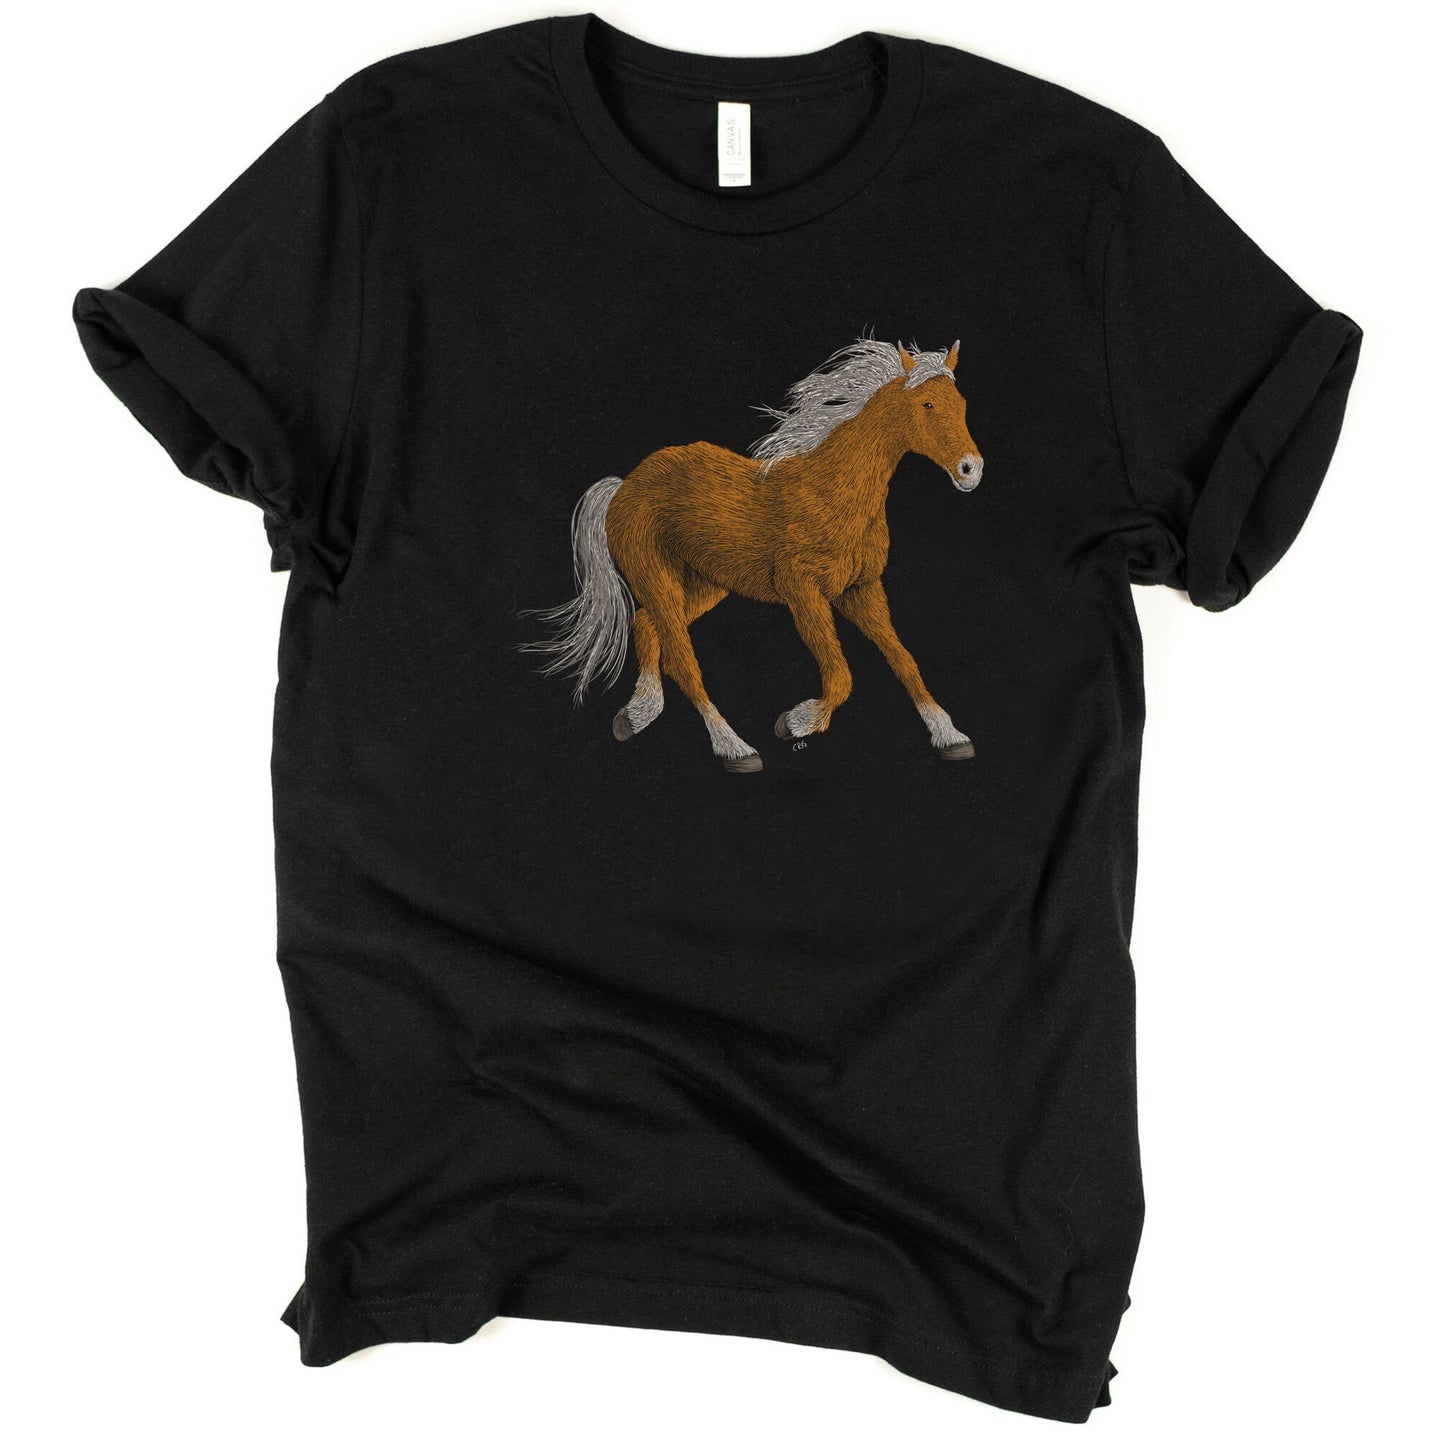 Horse Running Shirt